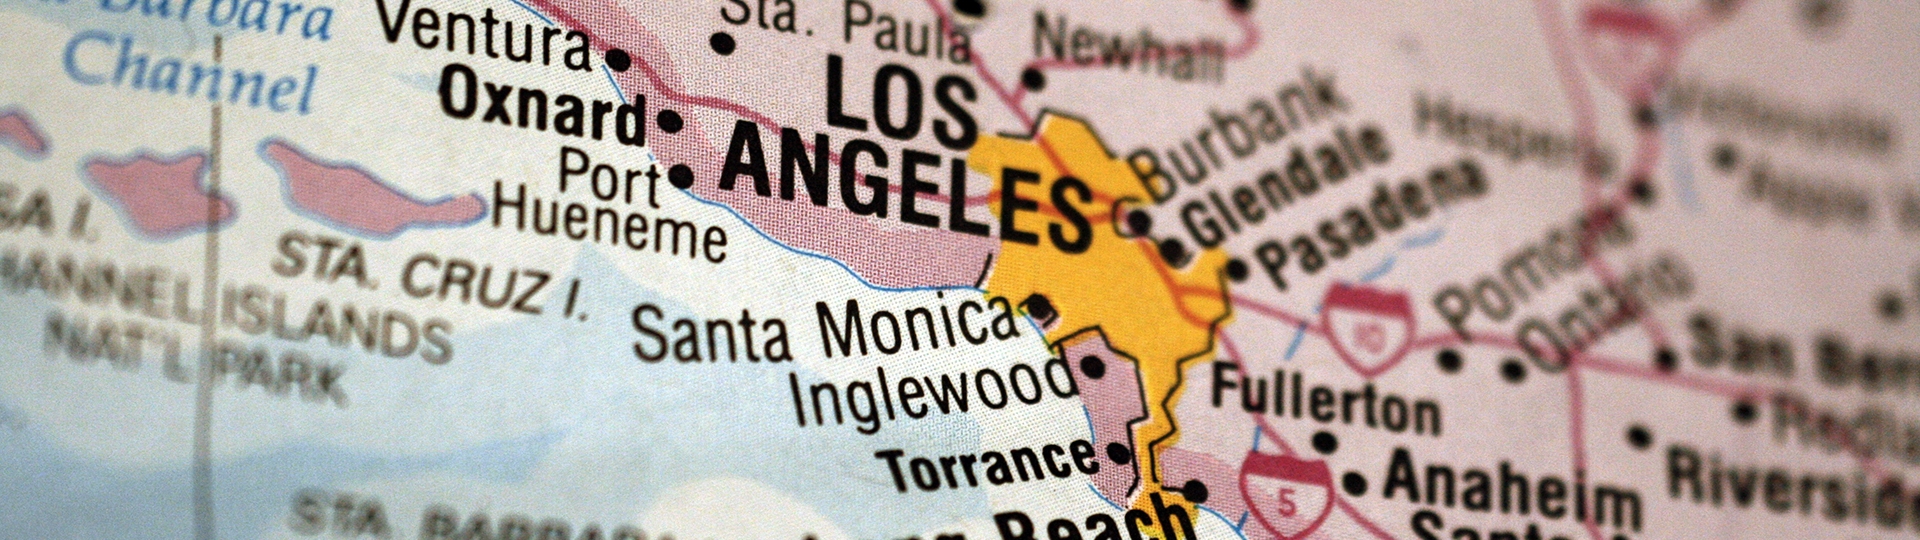 لافتة لخريطة مقاطعة Los Angeles عن قرب تسلط الضوء على Los Angeles وبلديّاتها المحيطة.